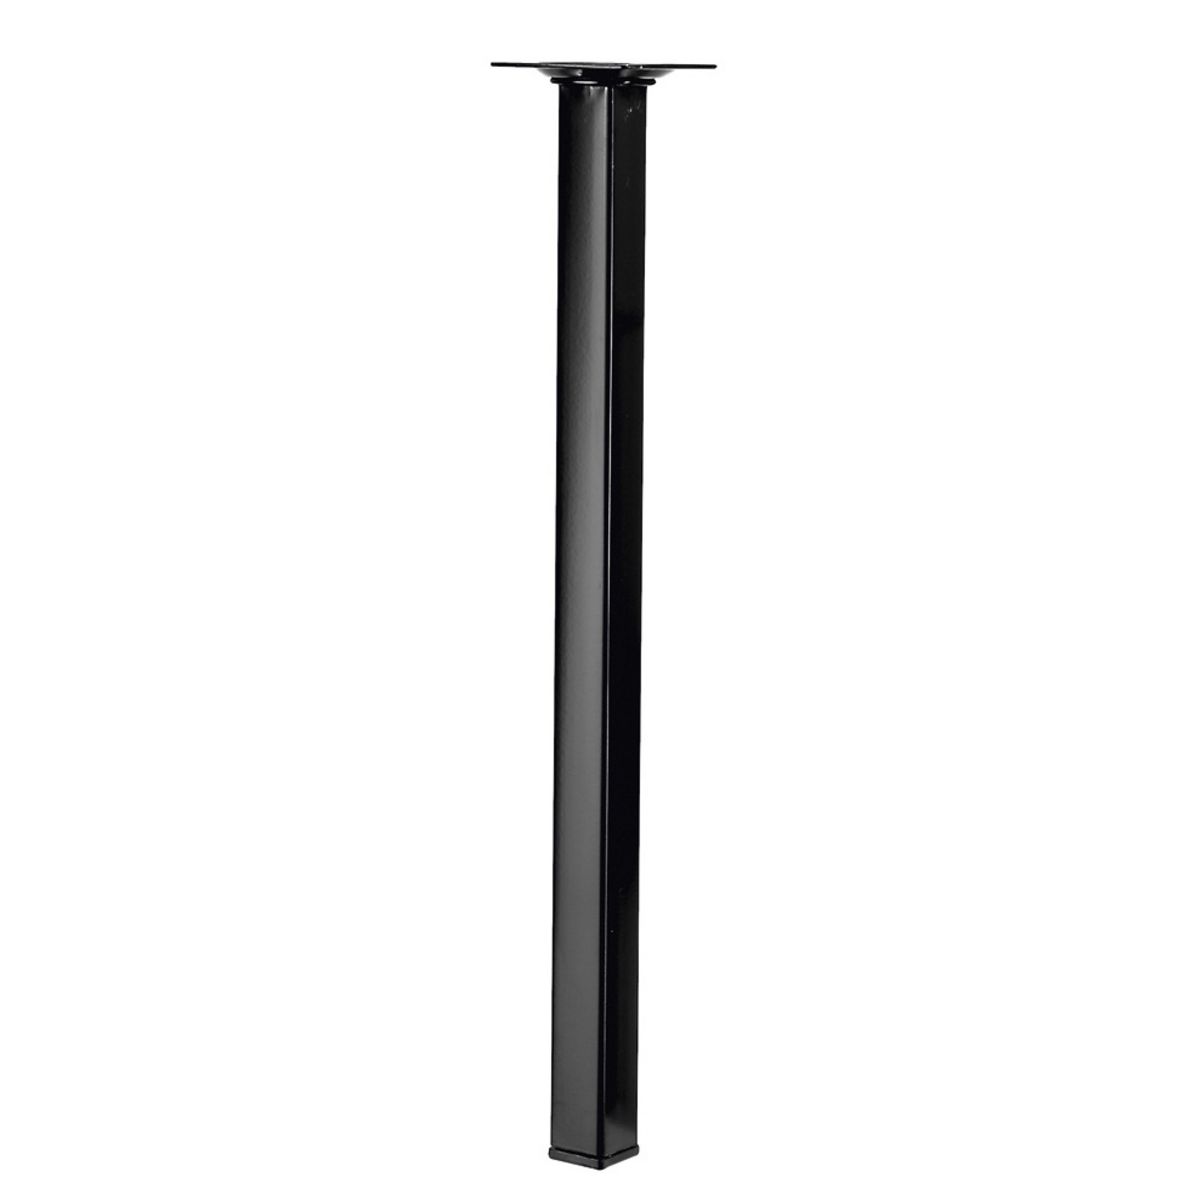 CENTRALE BRICO Pied de table basse carré fixe acier époxy noir, 40 cm